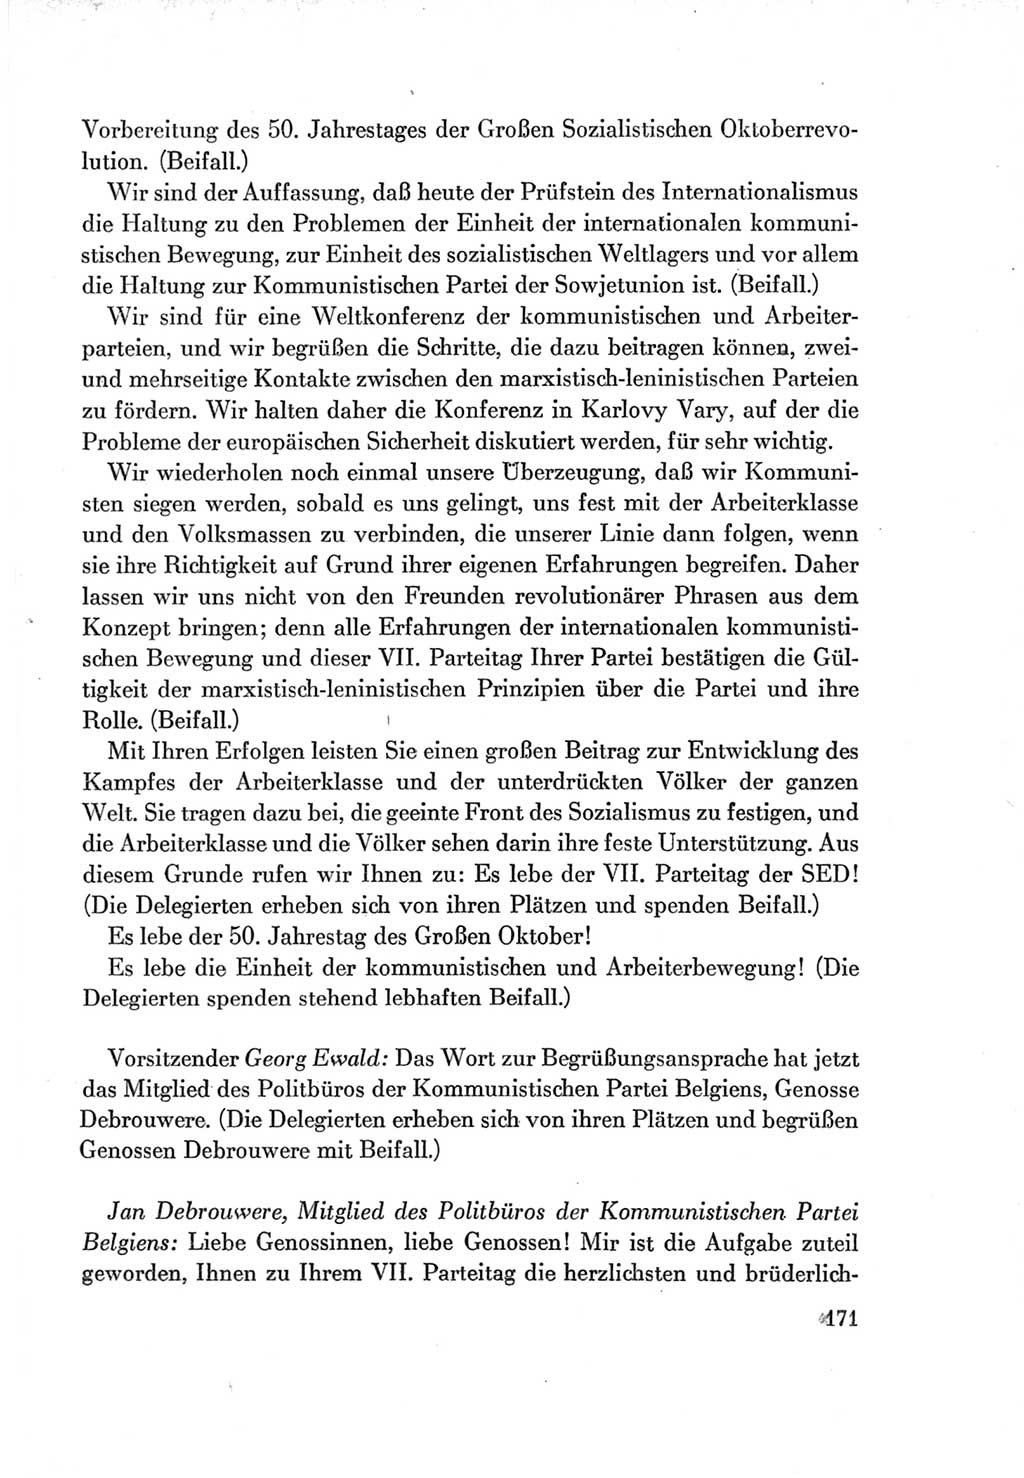 Protokoll der Verhandlungen des Ⅶ. Parteitages der Sozialistischen Einheitspartei Deutschlands (SED) [Deutsche Demokratische Republik (DDR)] 1967, Band Ⅱ, Seite 171 (Prot. Verh. Ⅶ. PT SED DDR 1967, Bd. Ⅱ, S. 171)